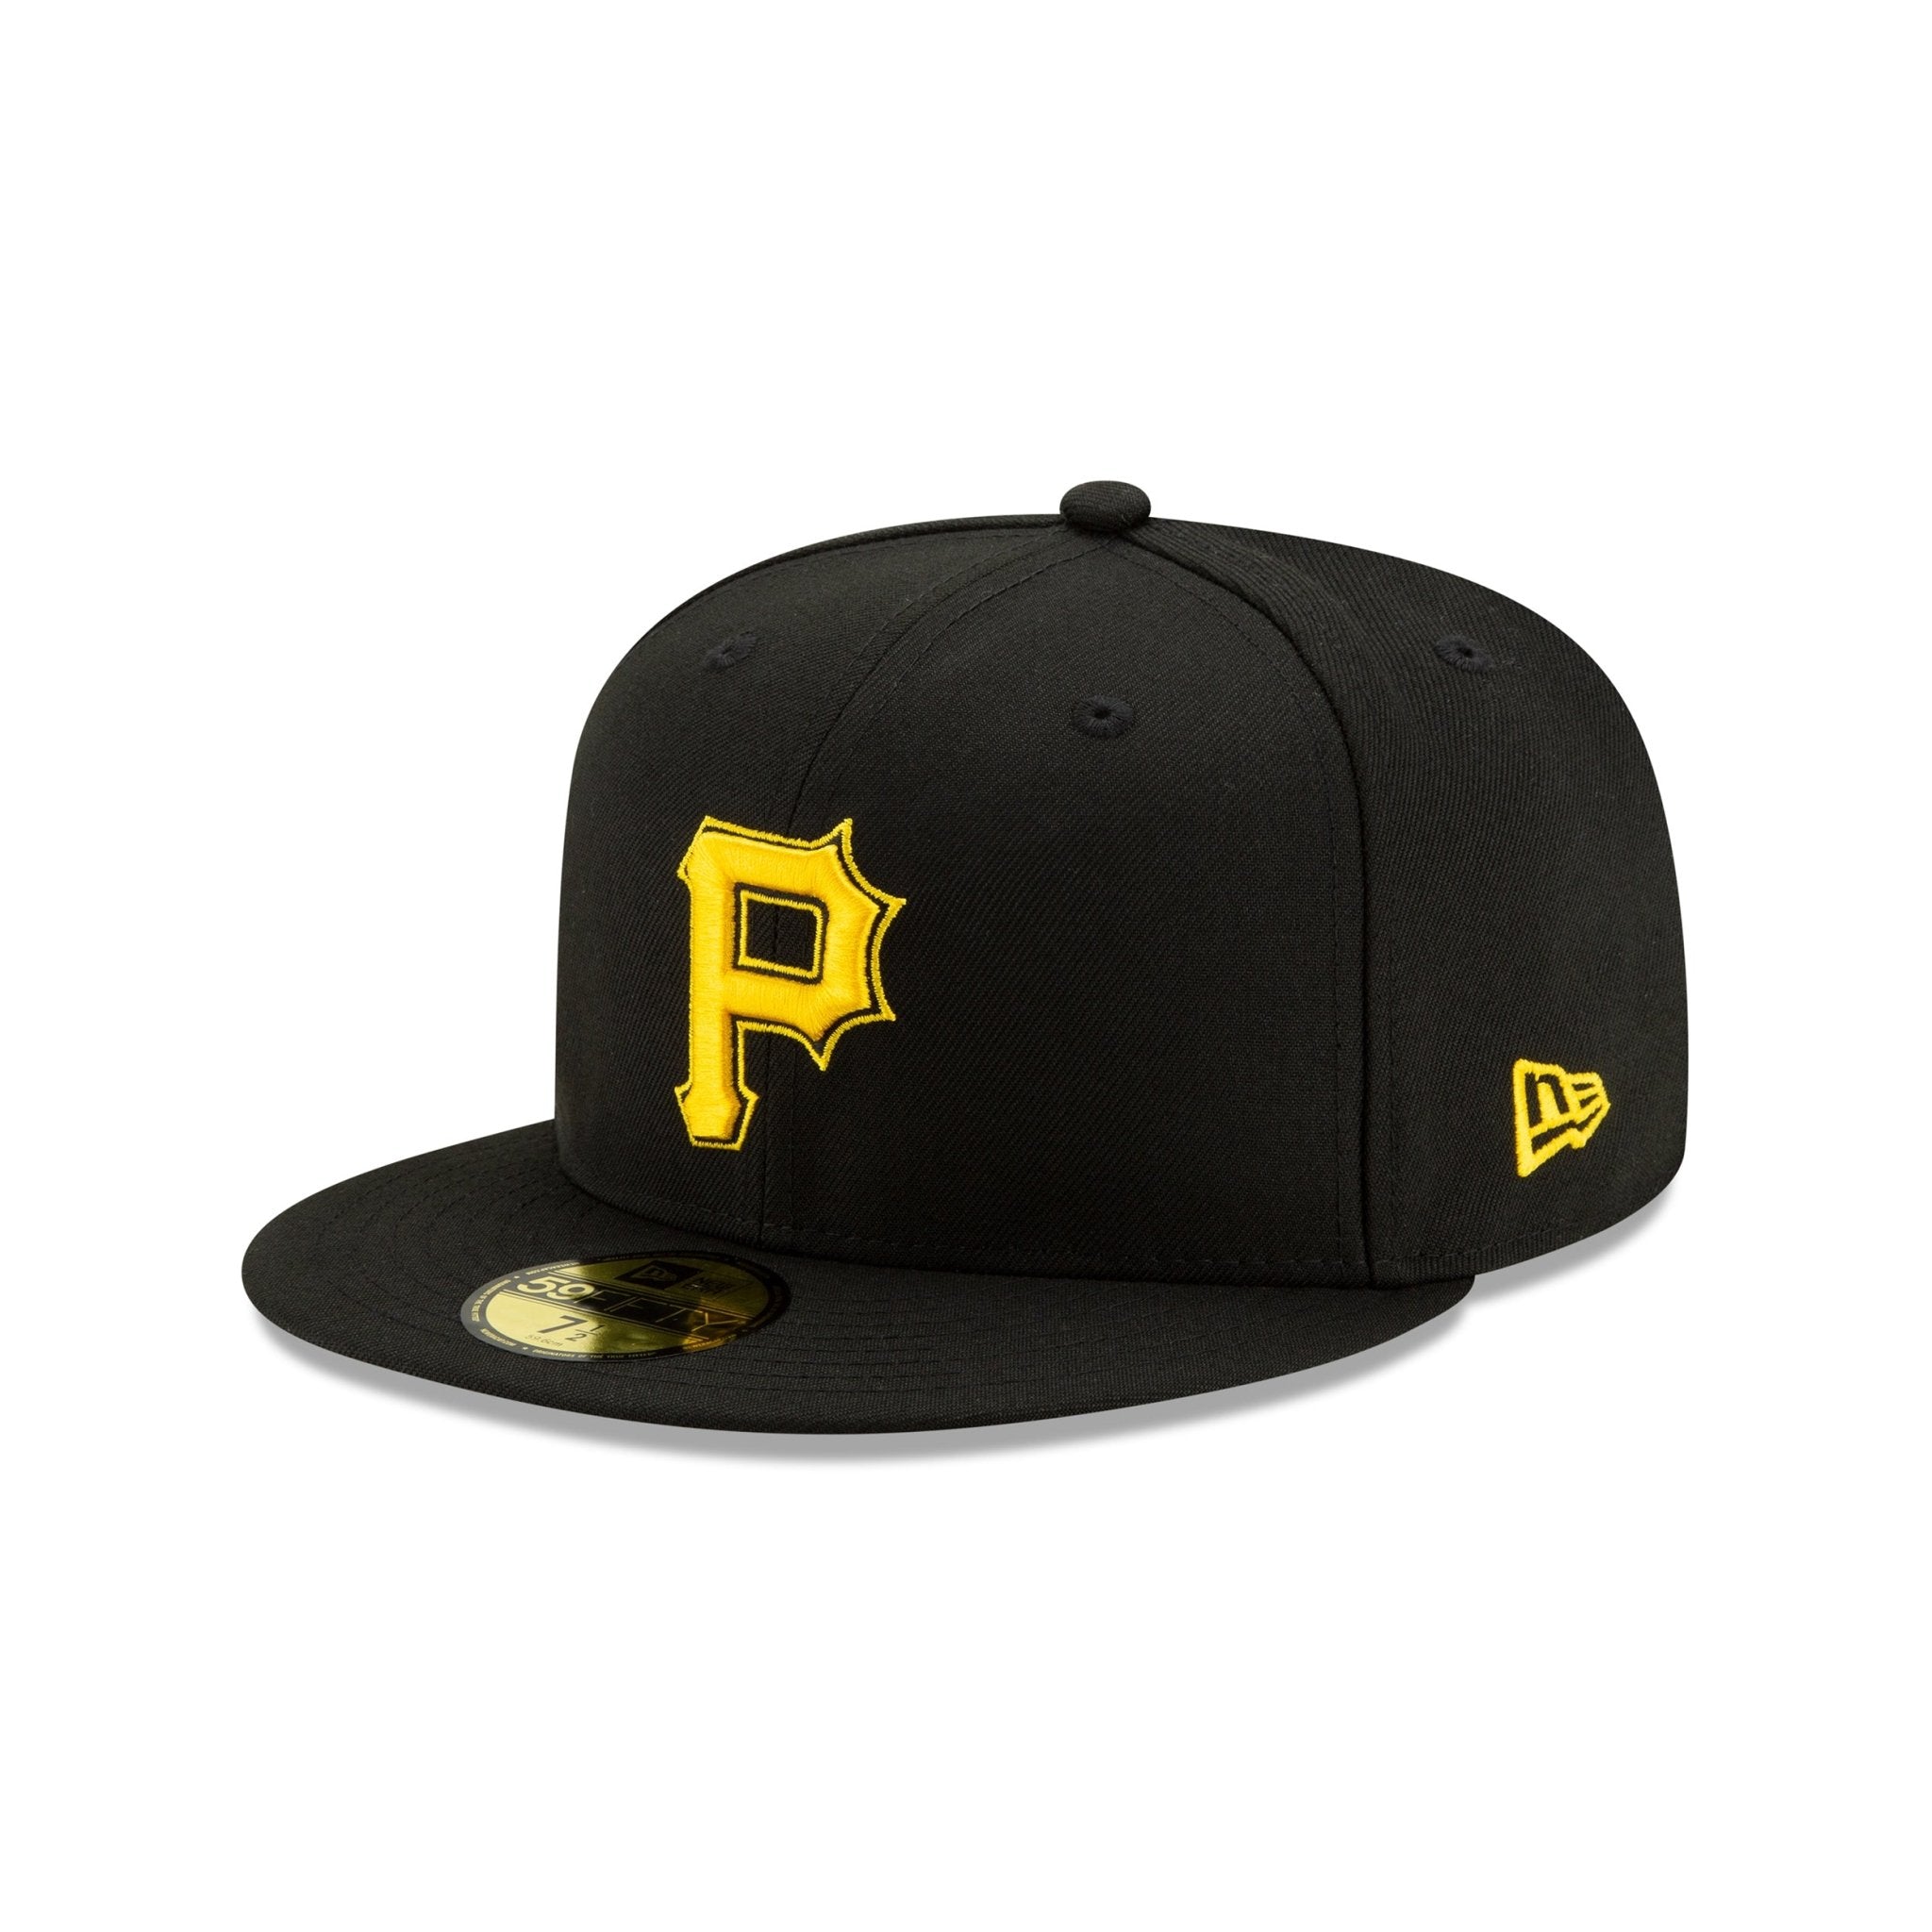 帽子NEW ERA 59fifty Pittsburgh Pirates パイレーツ